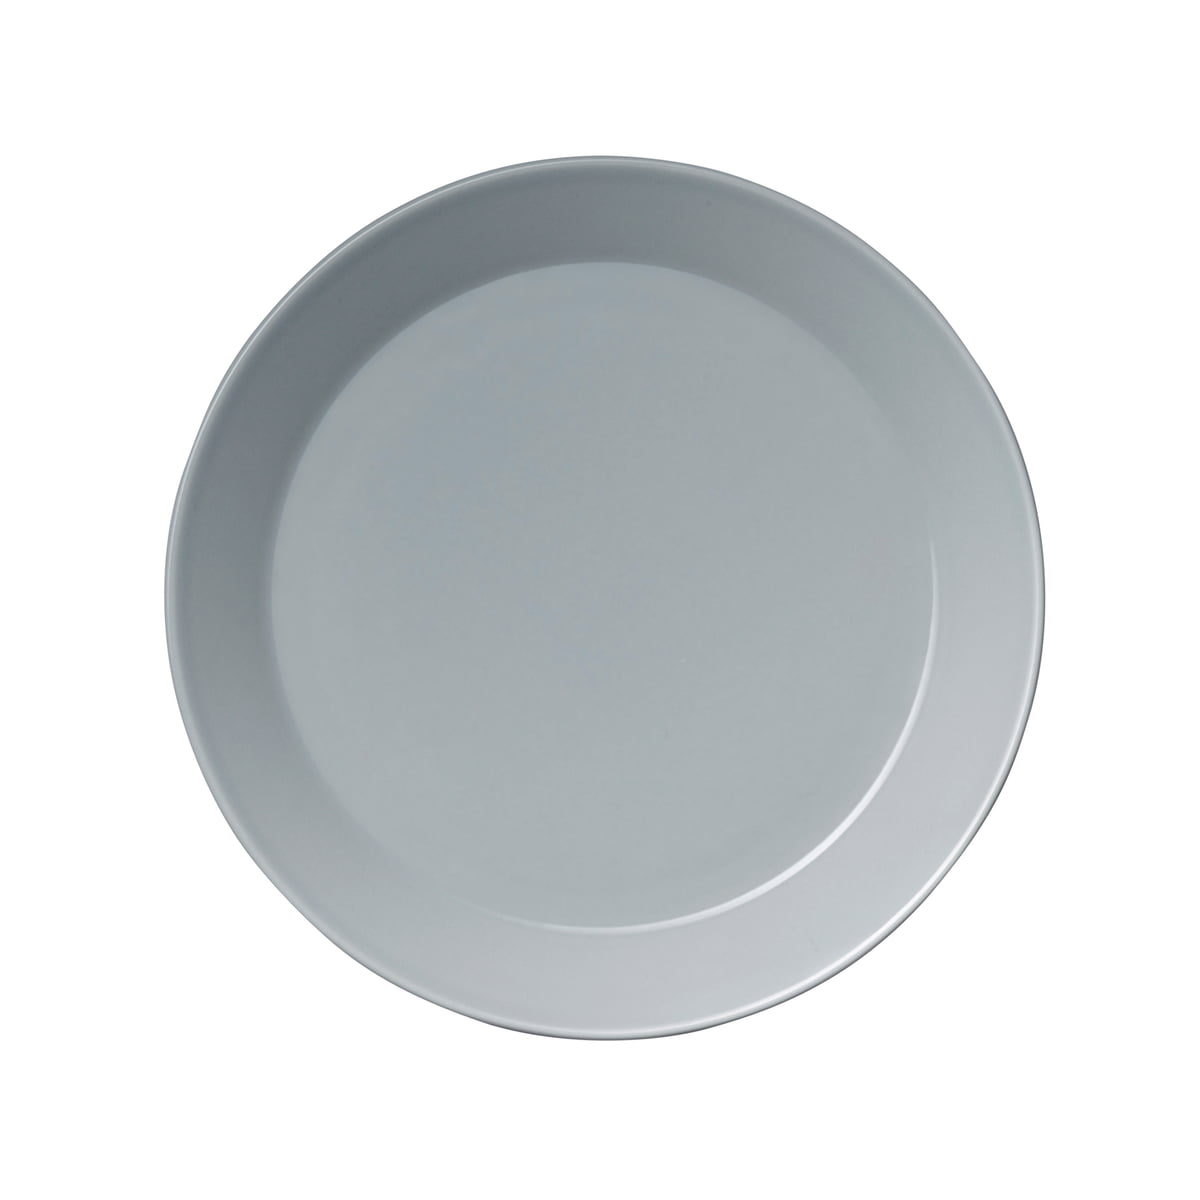 iittala - teema assiette plate ø 23 cm, gris perle